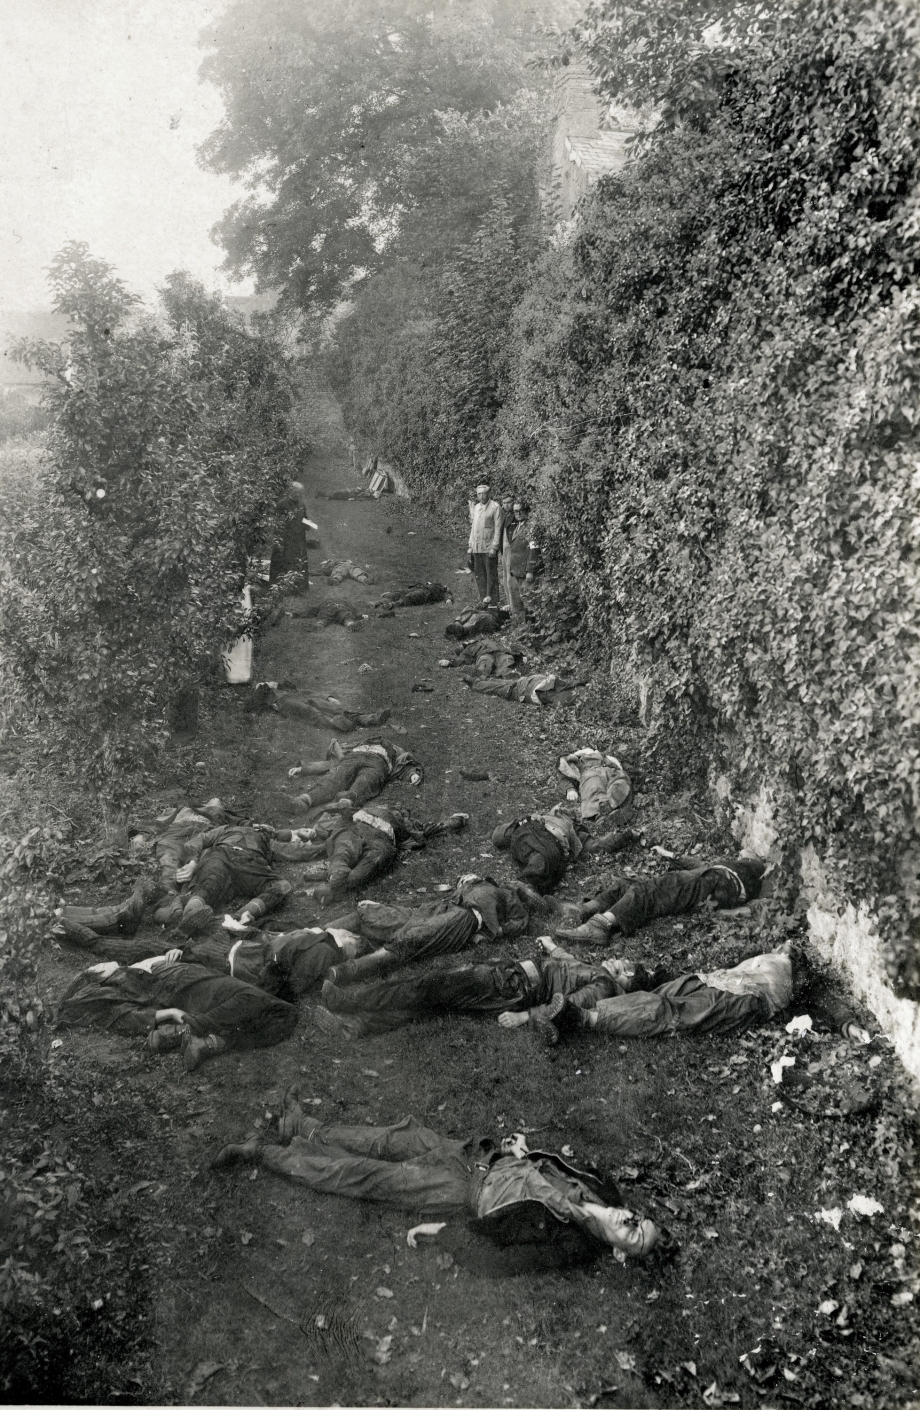 Les massacrés du 8 septembre
dans les jardins du petit séminaire
(maquisards de la compagnie 